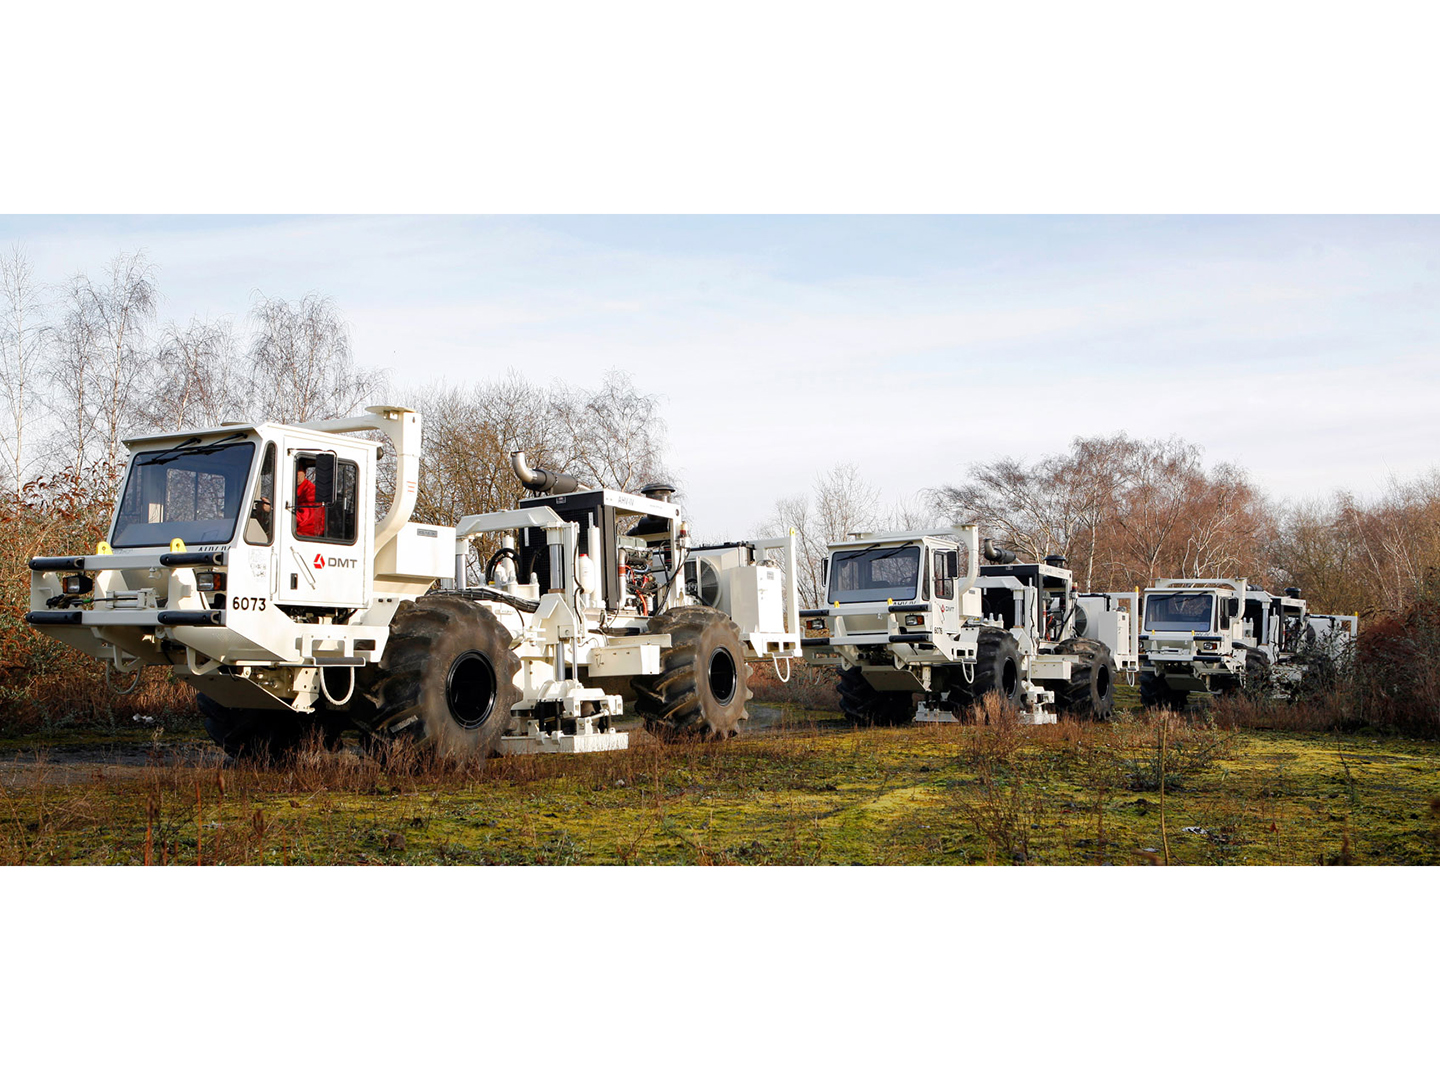 Vibroseis trucks for seismic data acquisition.